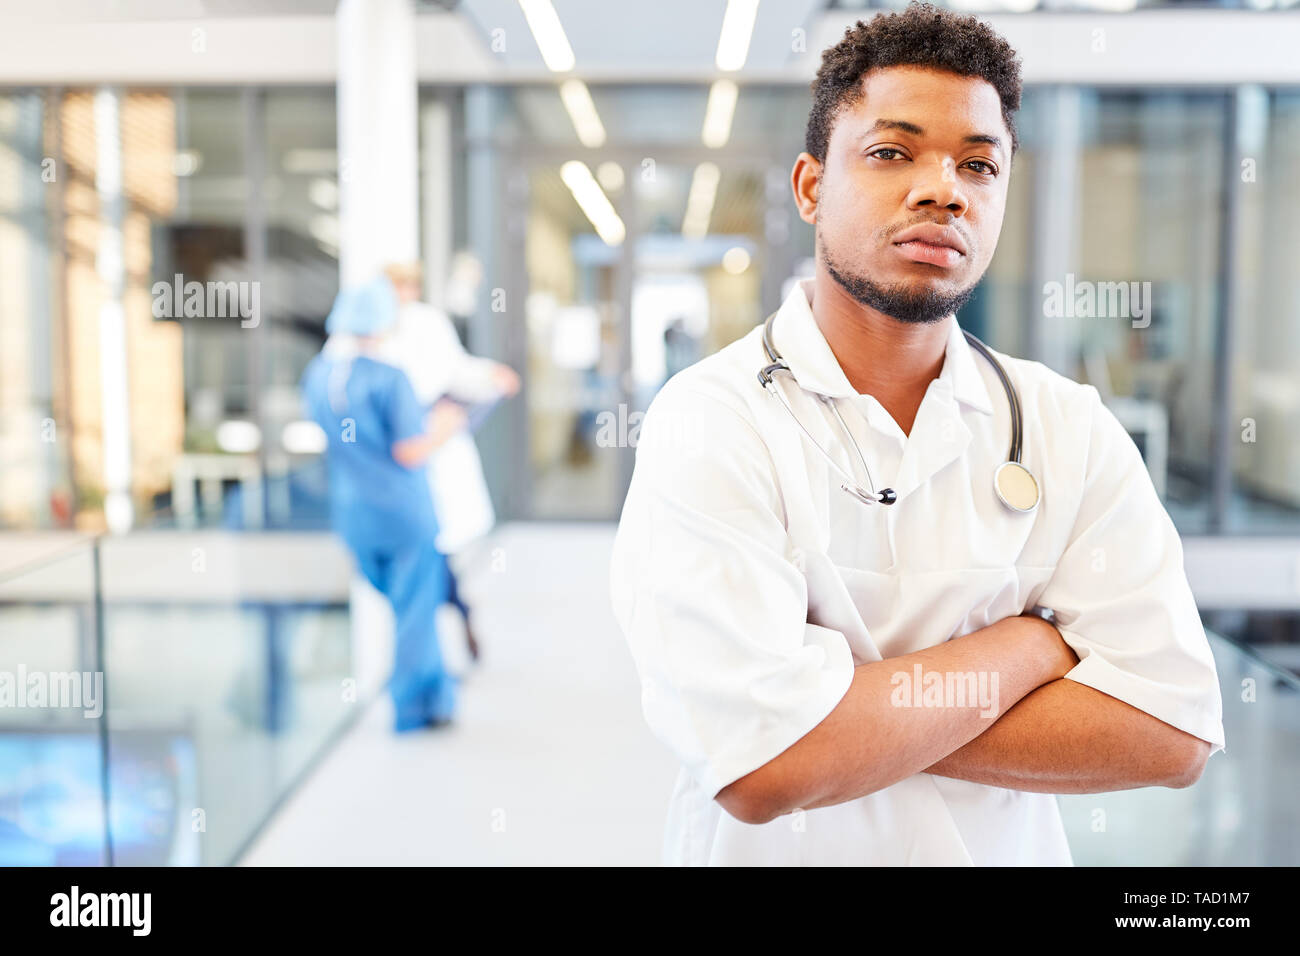 Jeune homme africain comme un étudiant en médecine ou de l'assistant médical à l'hôpital Banque D'Images